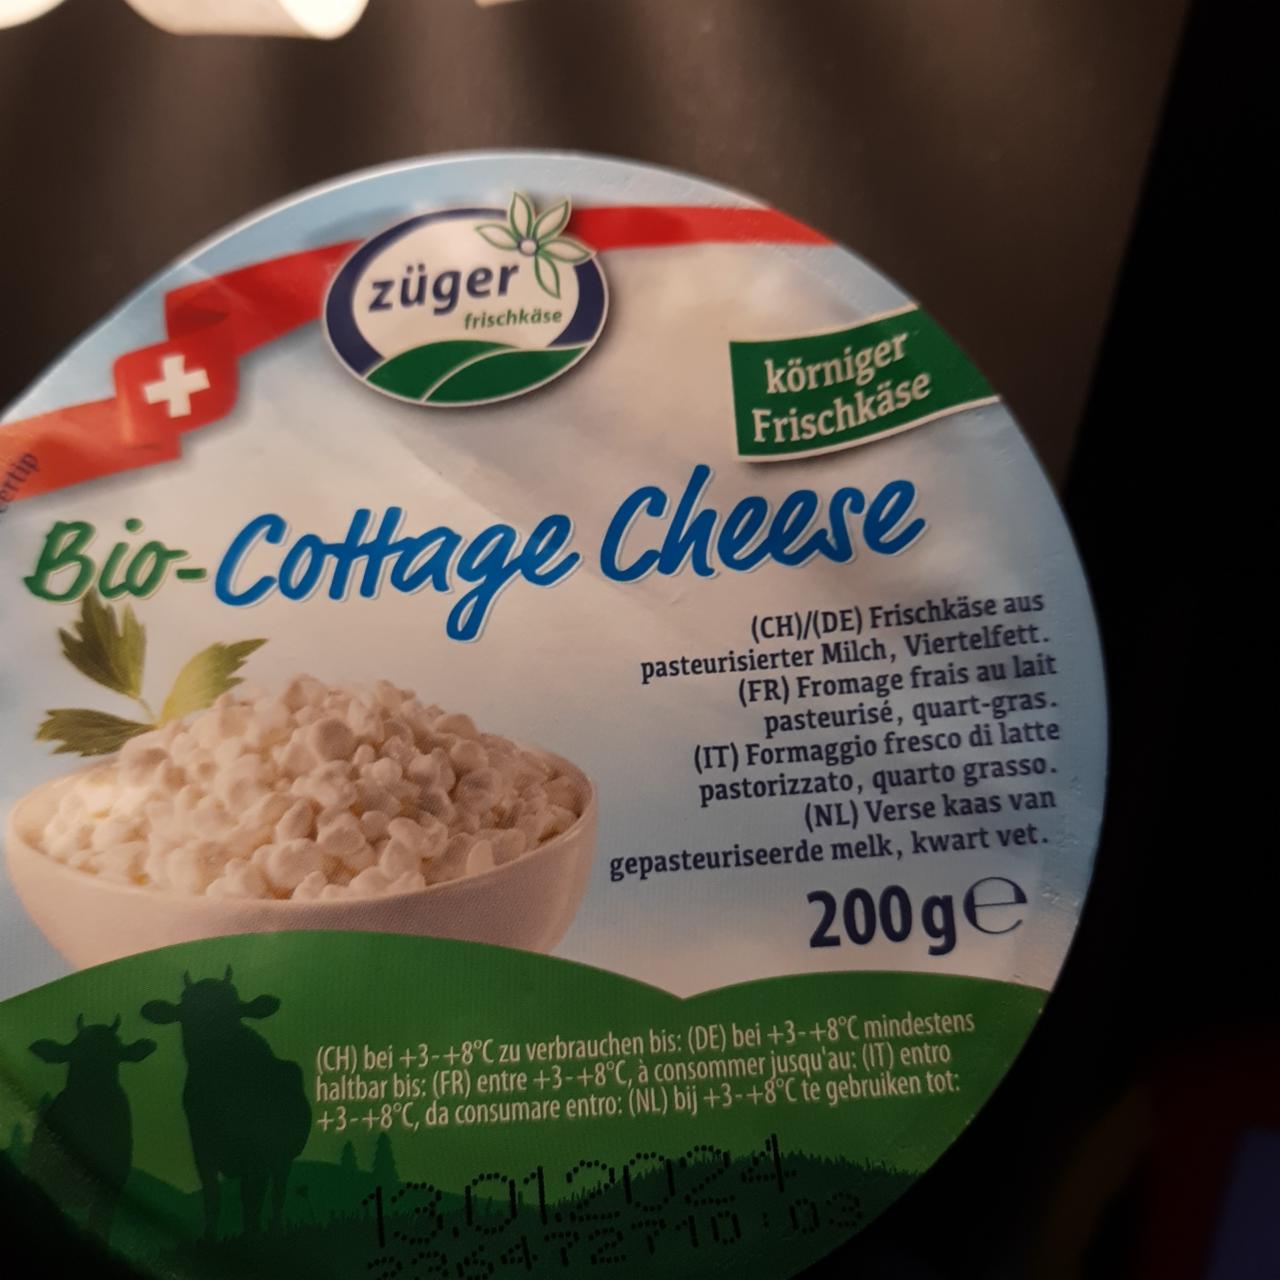 Fotografie - Bio Cottage Cheese Züger frischkäse